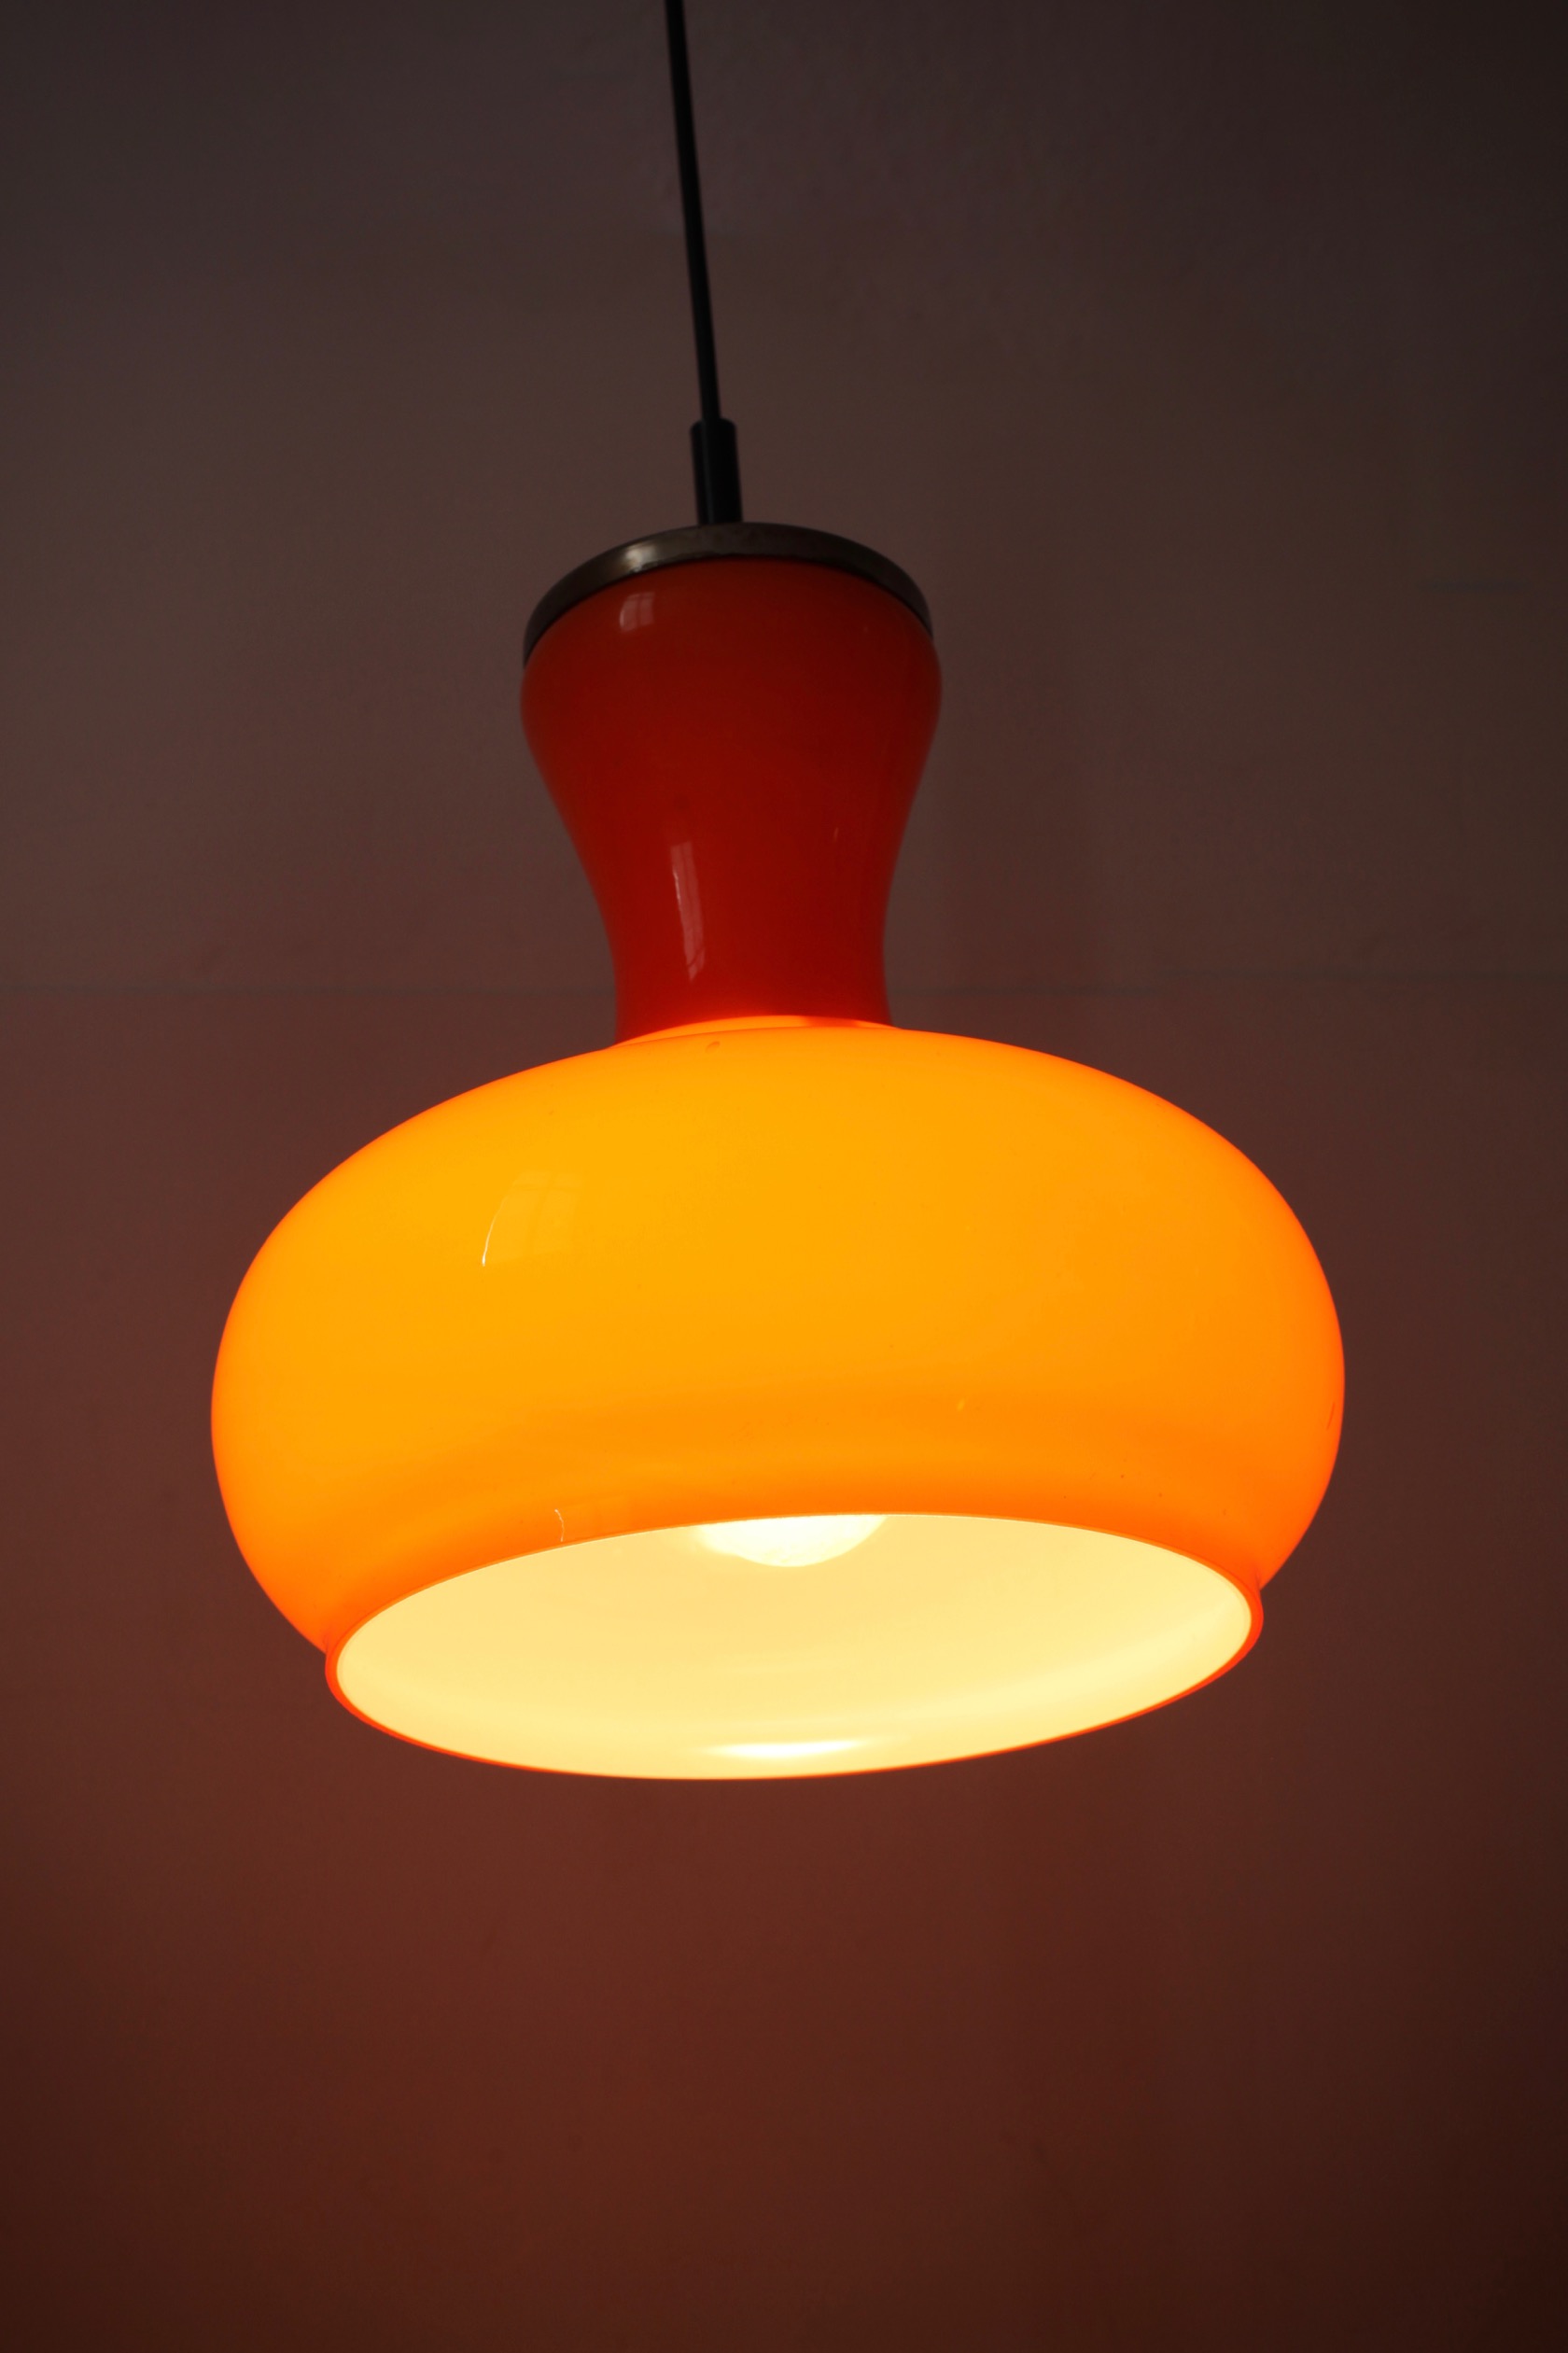 Lampe Im Restaurant Orange Warmes Licht Vintage Innenbeleuchtung